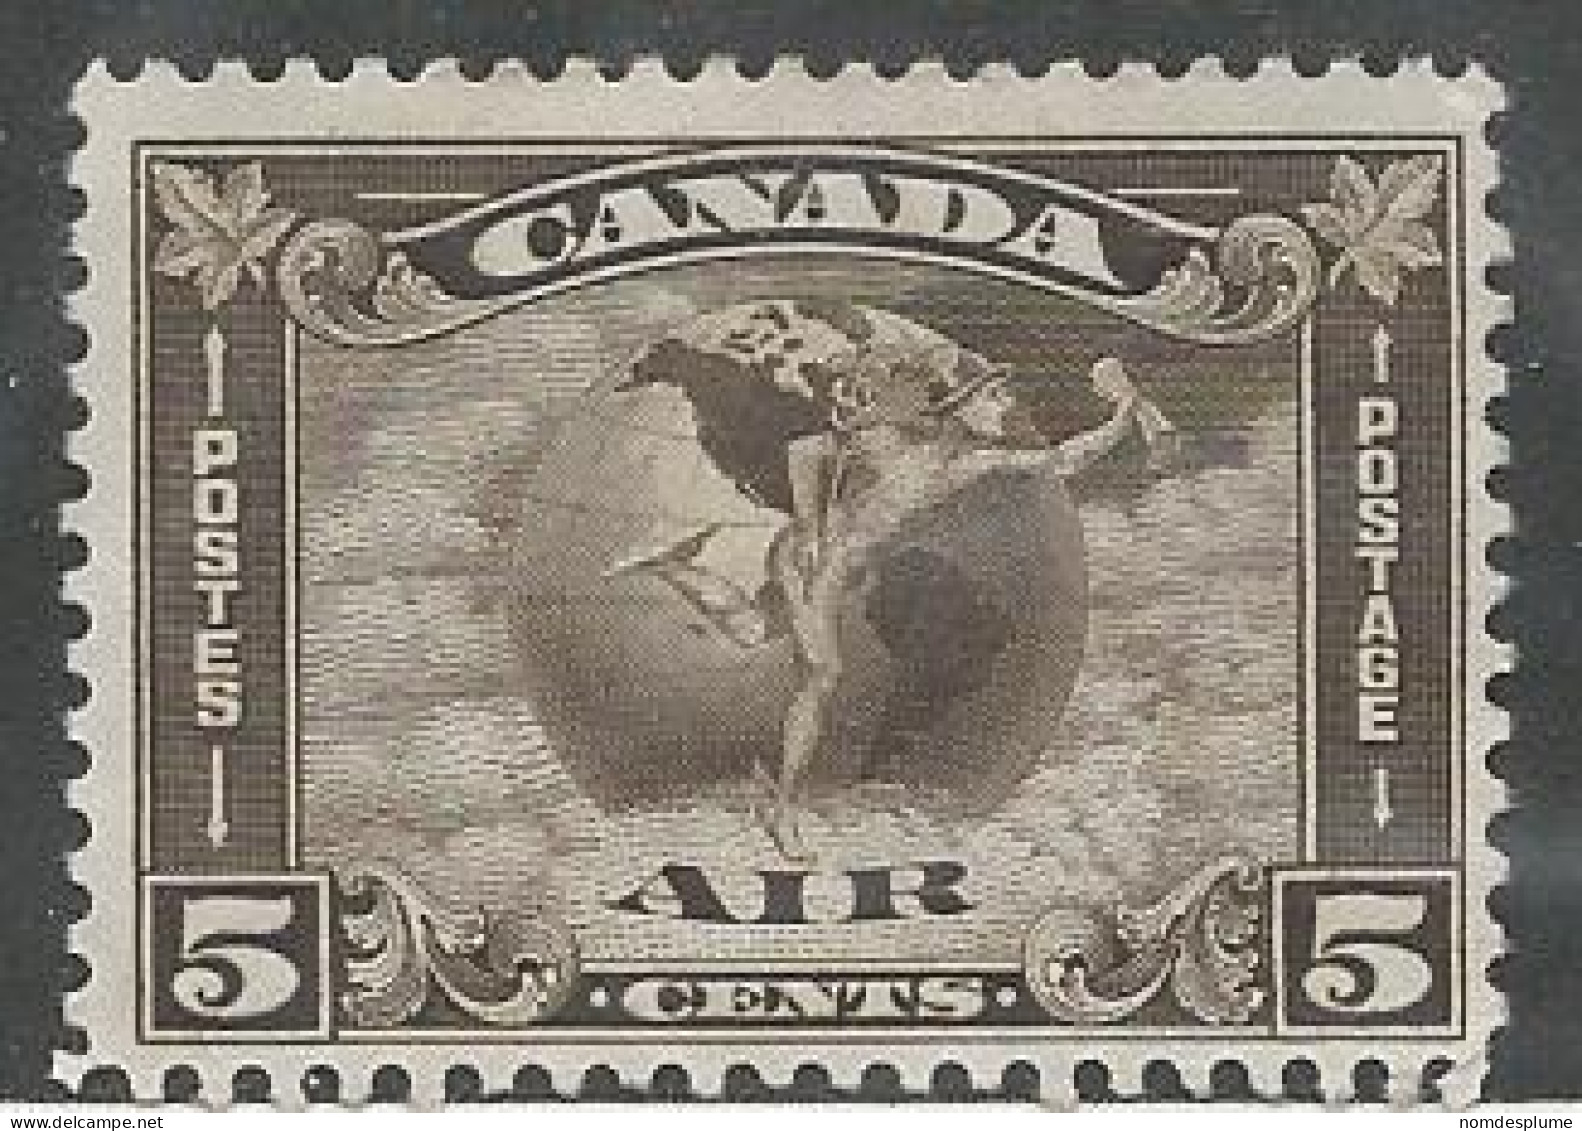 23332) Canada Airmail 1930 Used - Posta Aerea